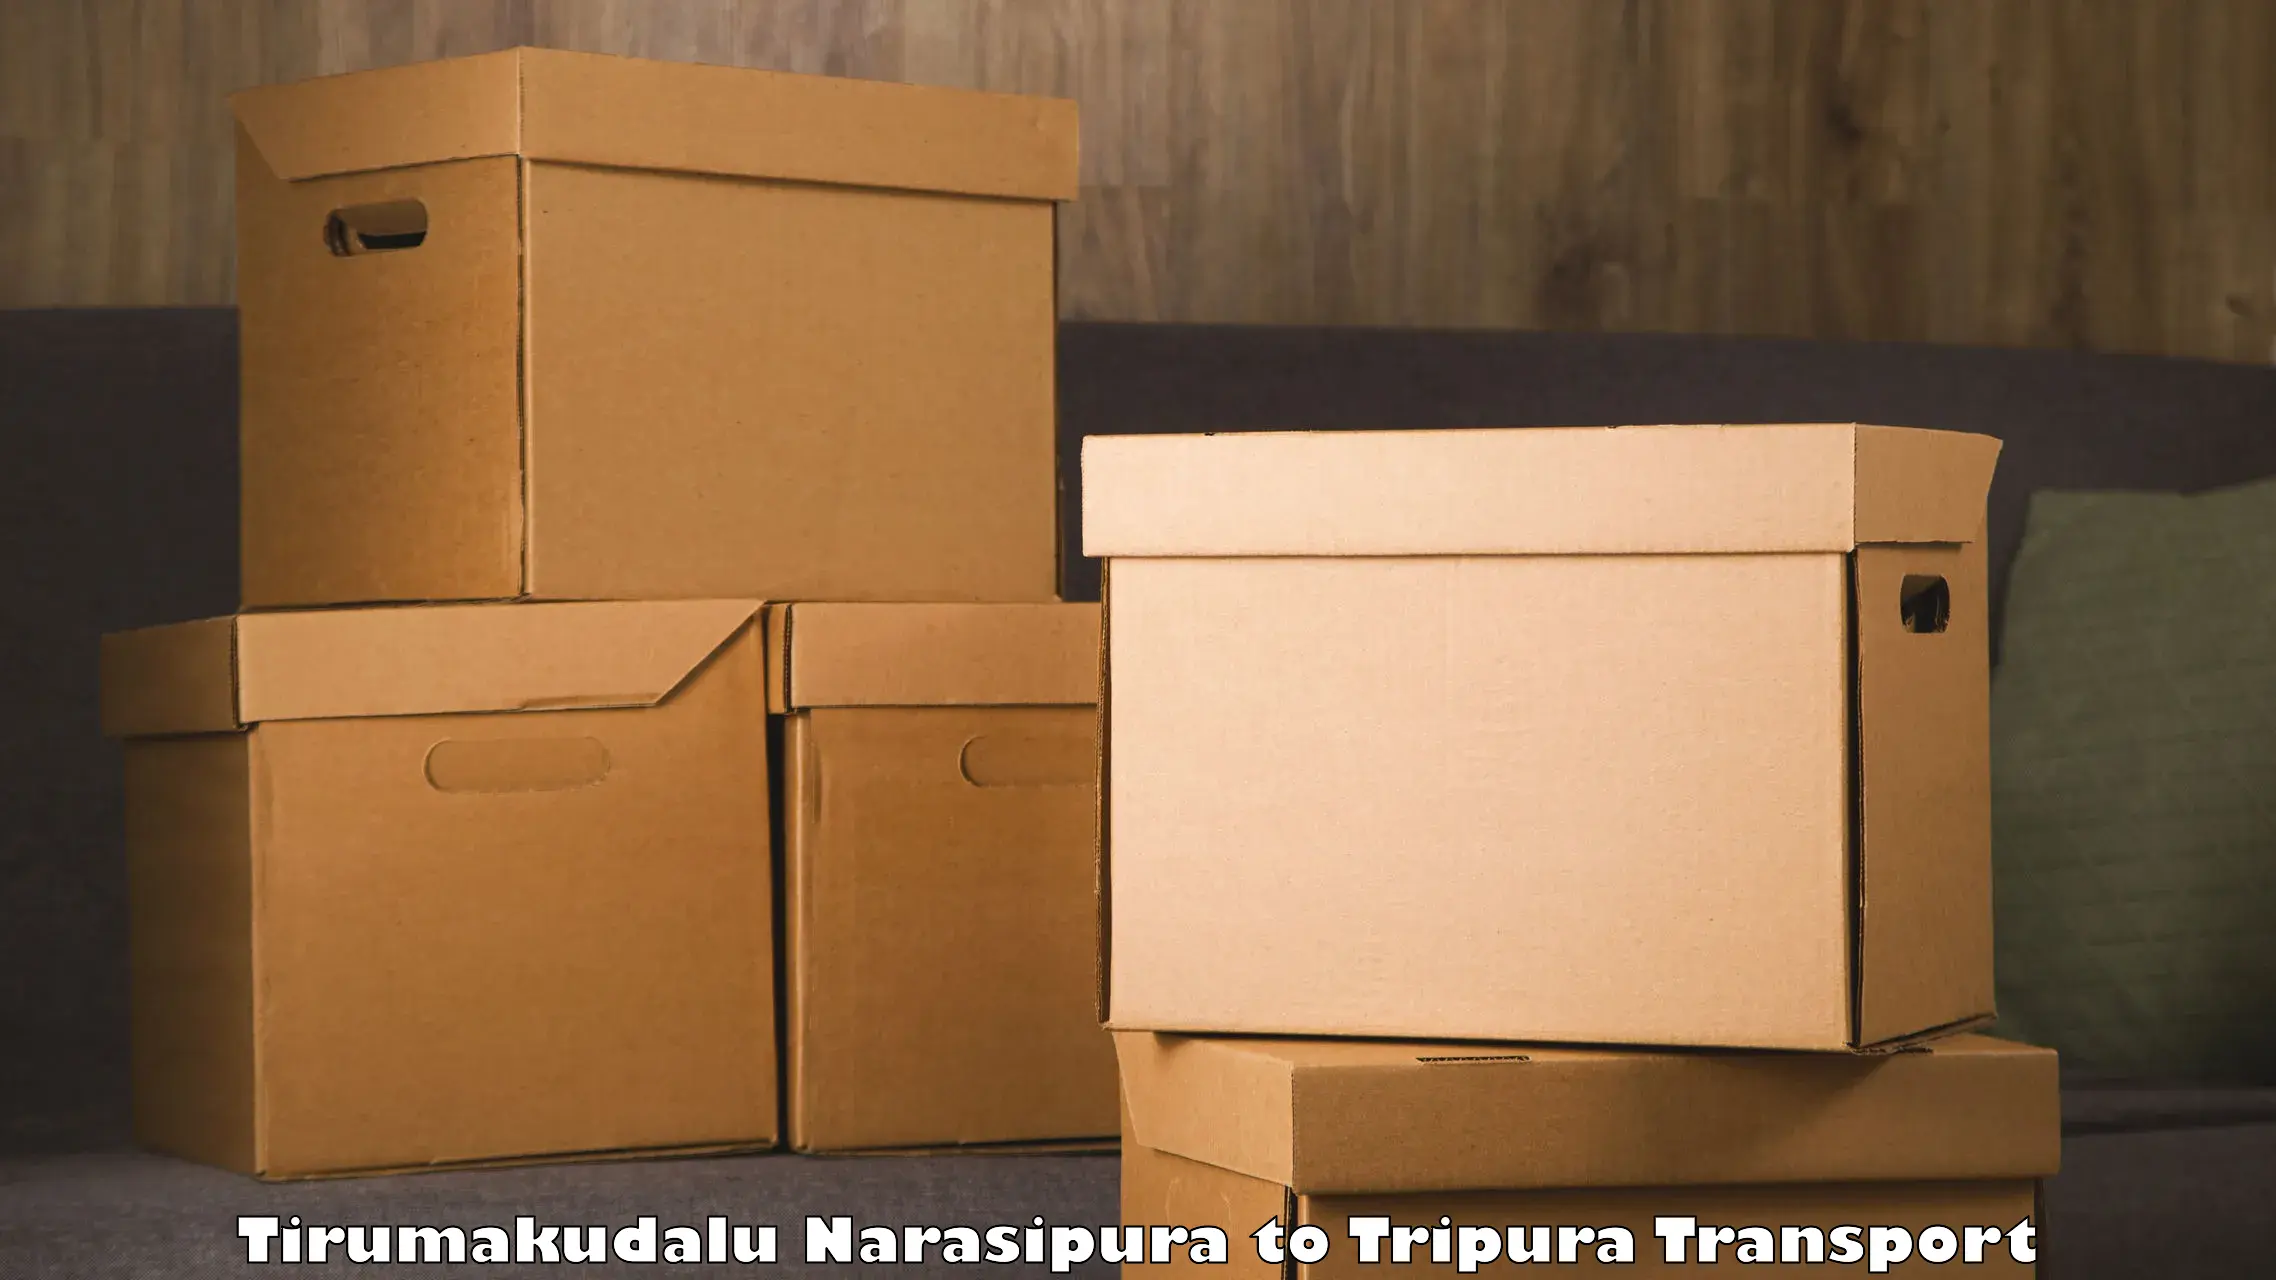 Furniture transport service Tirumakudalu Narasipura to Udaipur Tripura